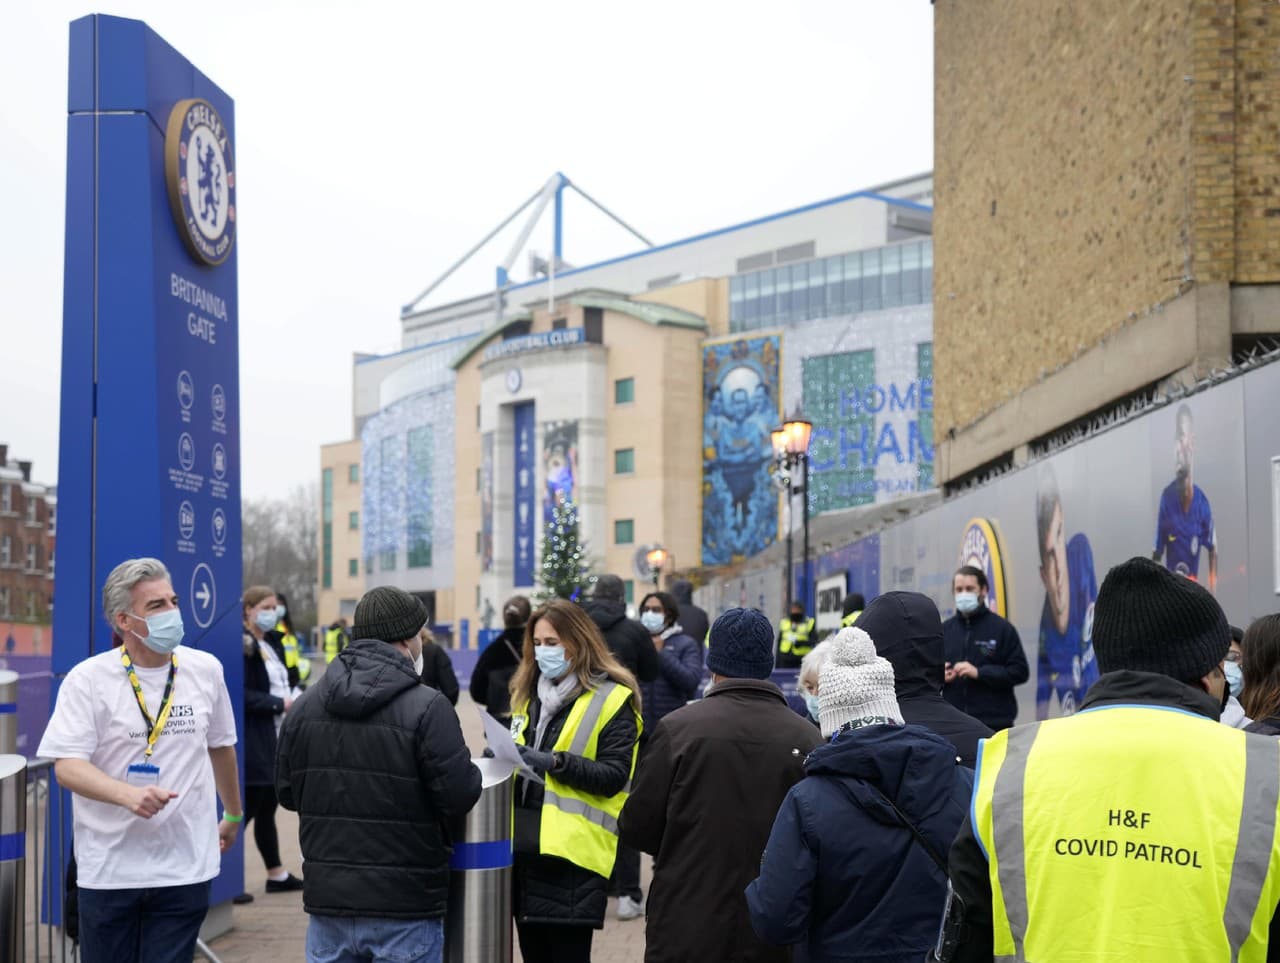 Ľudia čakajú na očkovanie na štadióne Stamford Bridge, ktorý je domovským stánkom futbalového klubu Chelsea Londýn